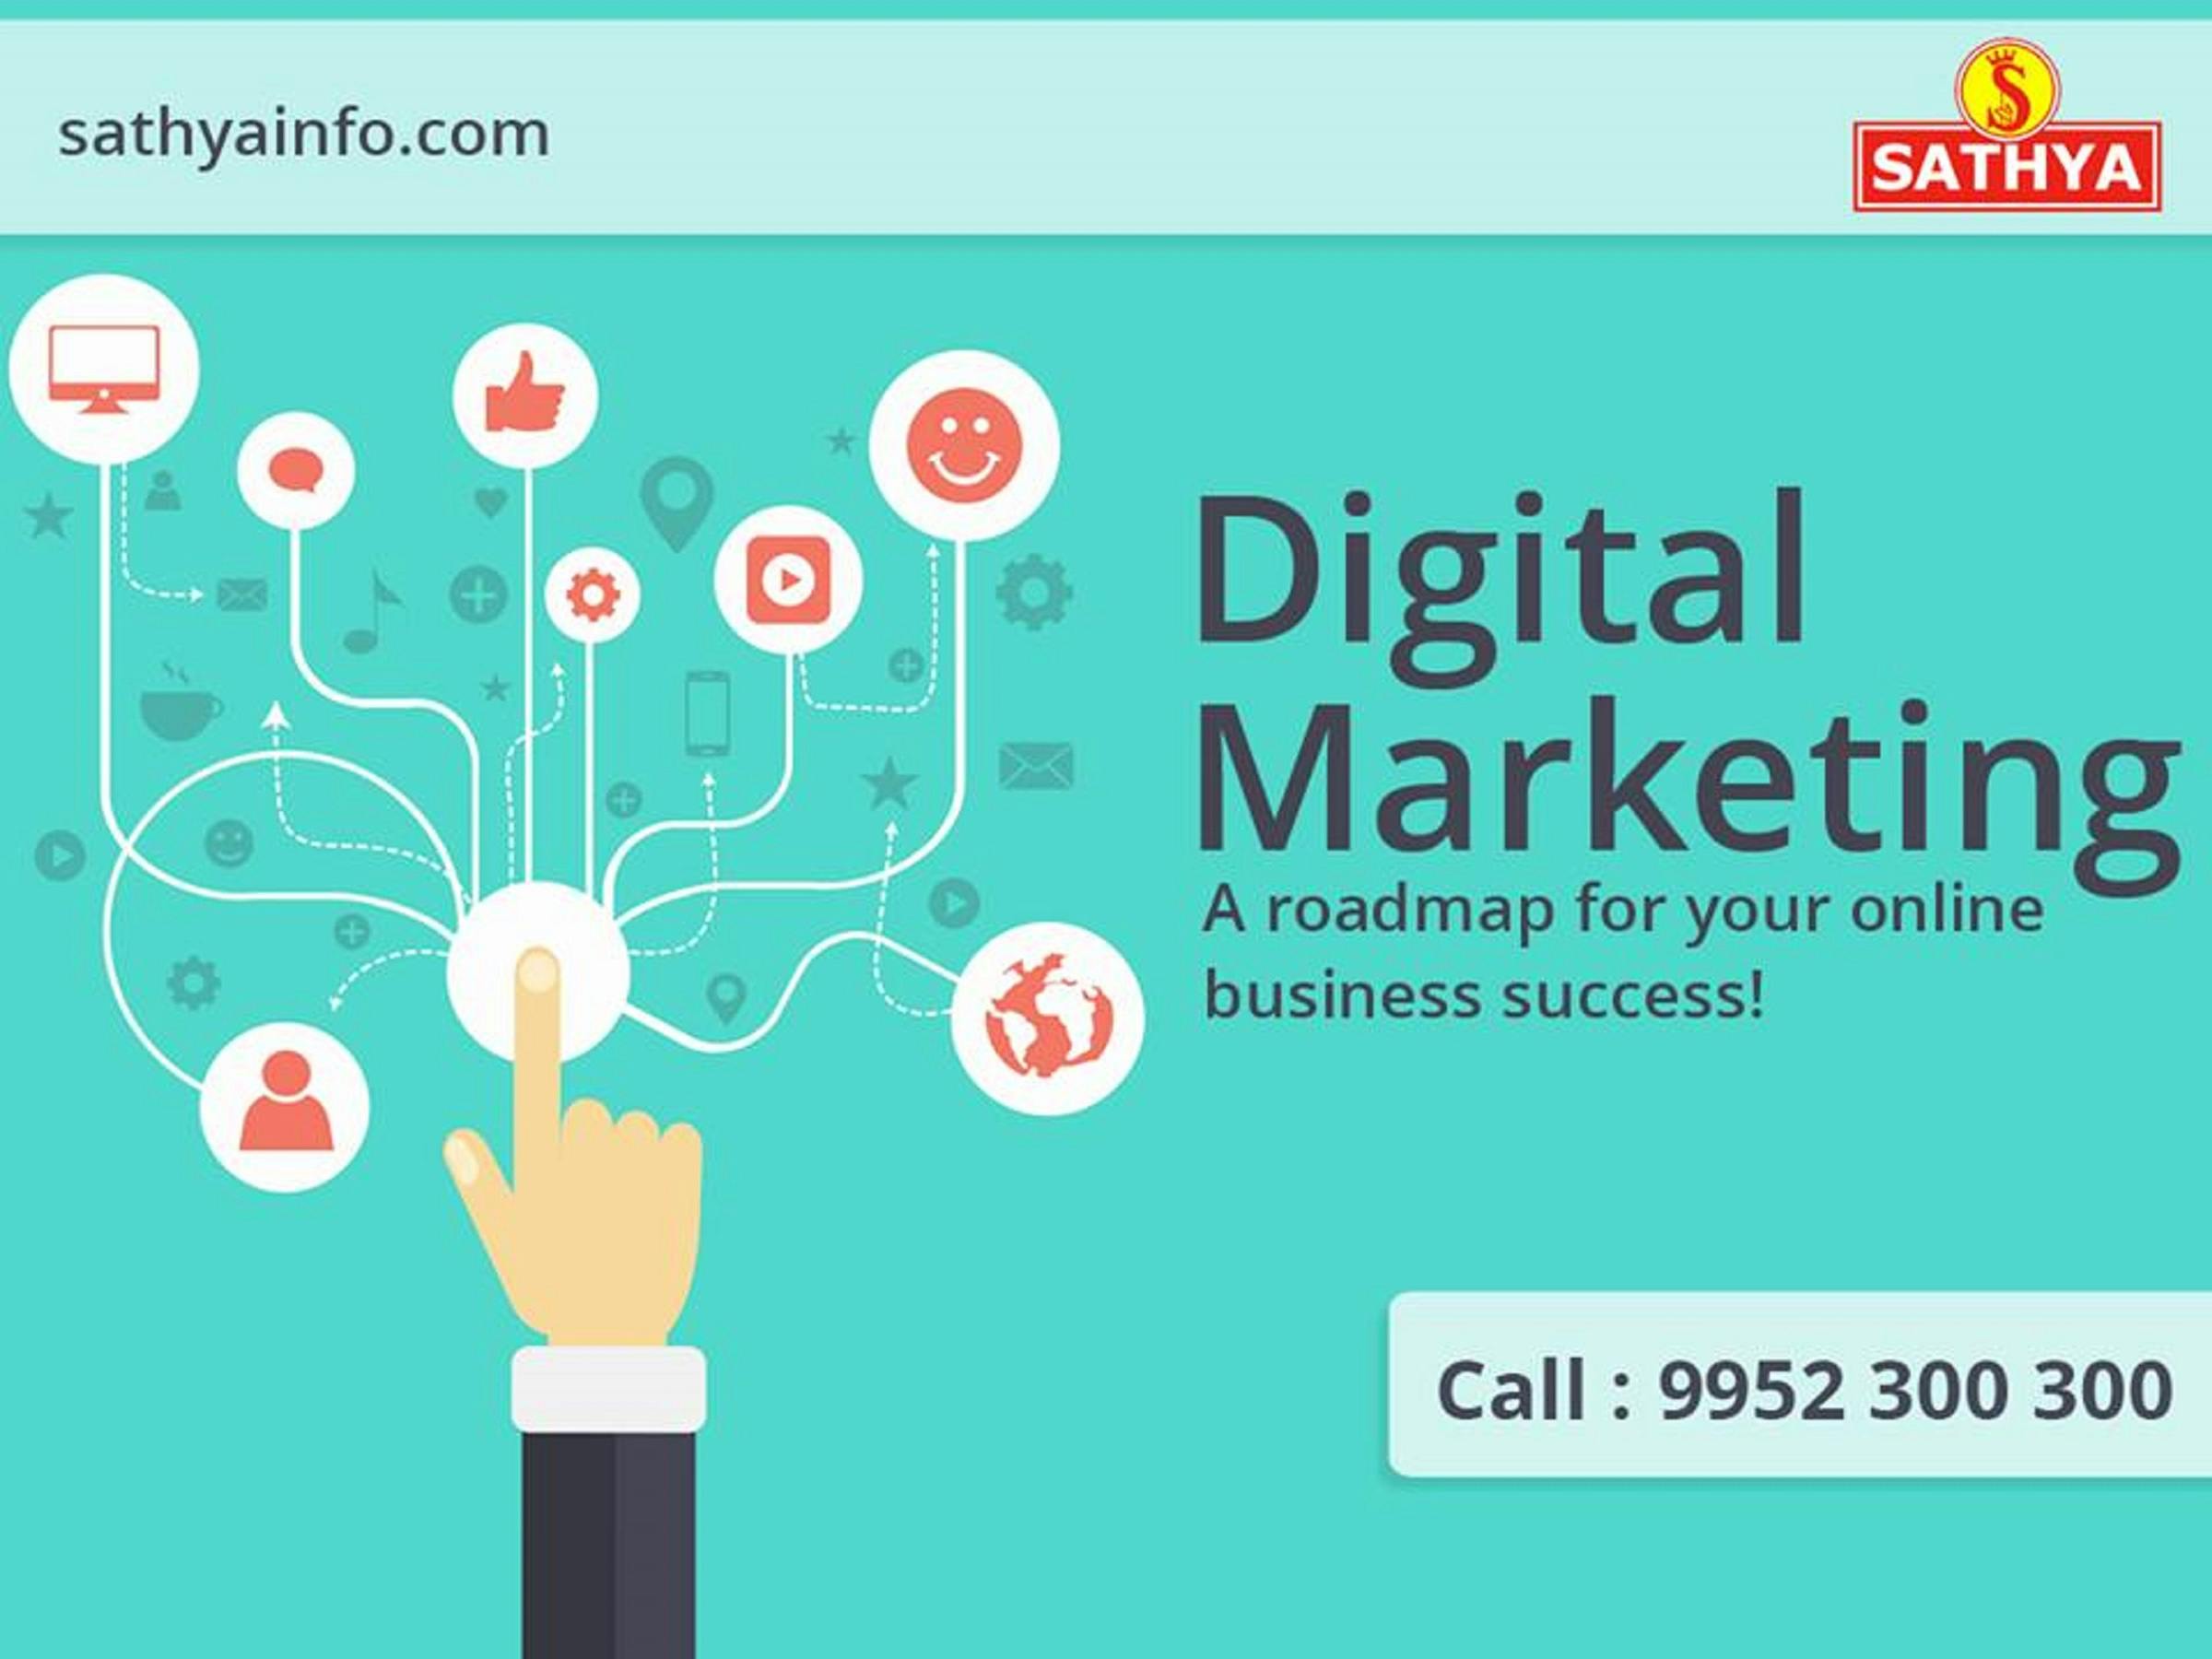 Free stock photo of Digital Marketing Company in India, Digital Marketing Services in India